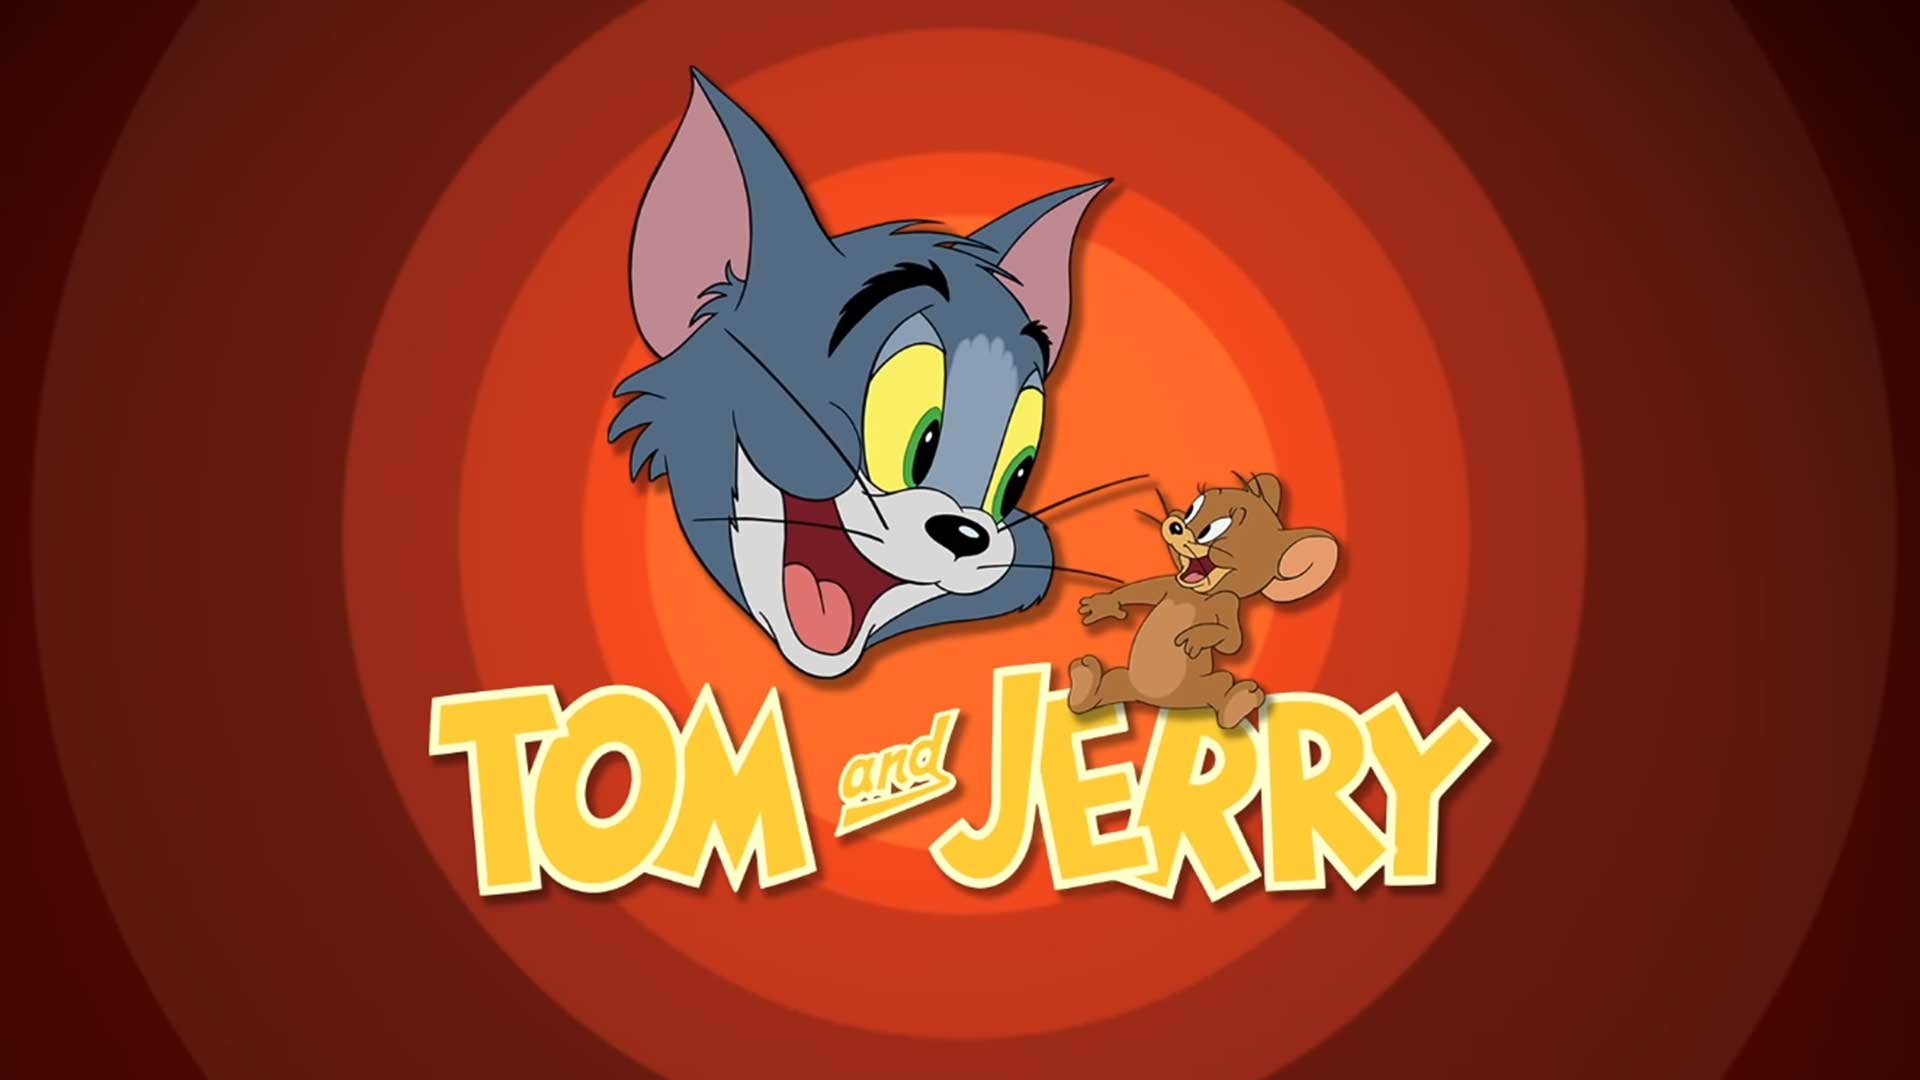 Том и Джерри – 53 серия «Обманутый кот» / Tom and Jerry